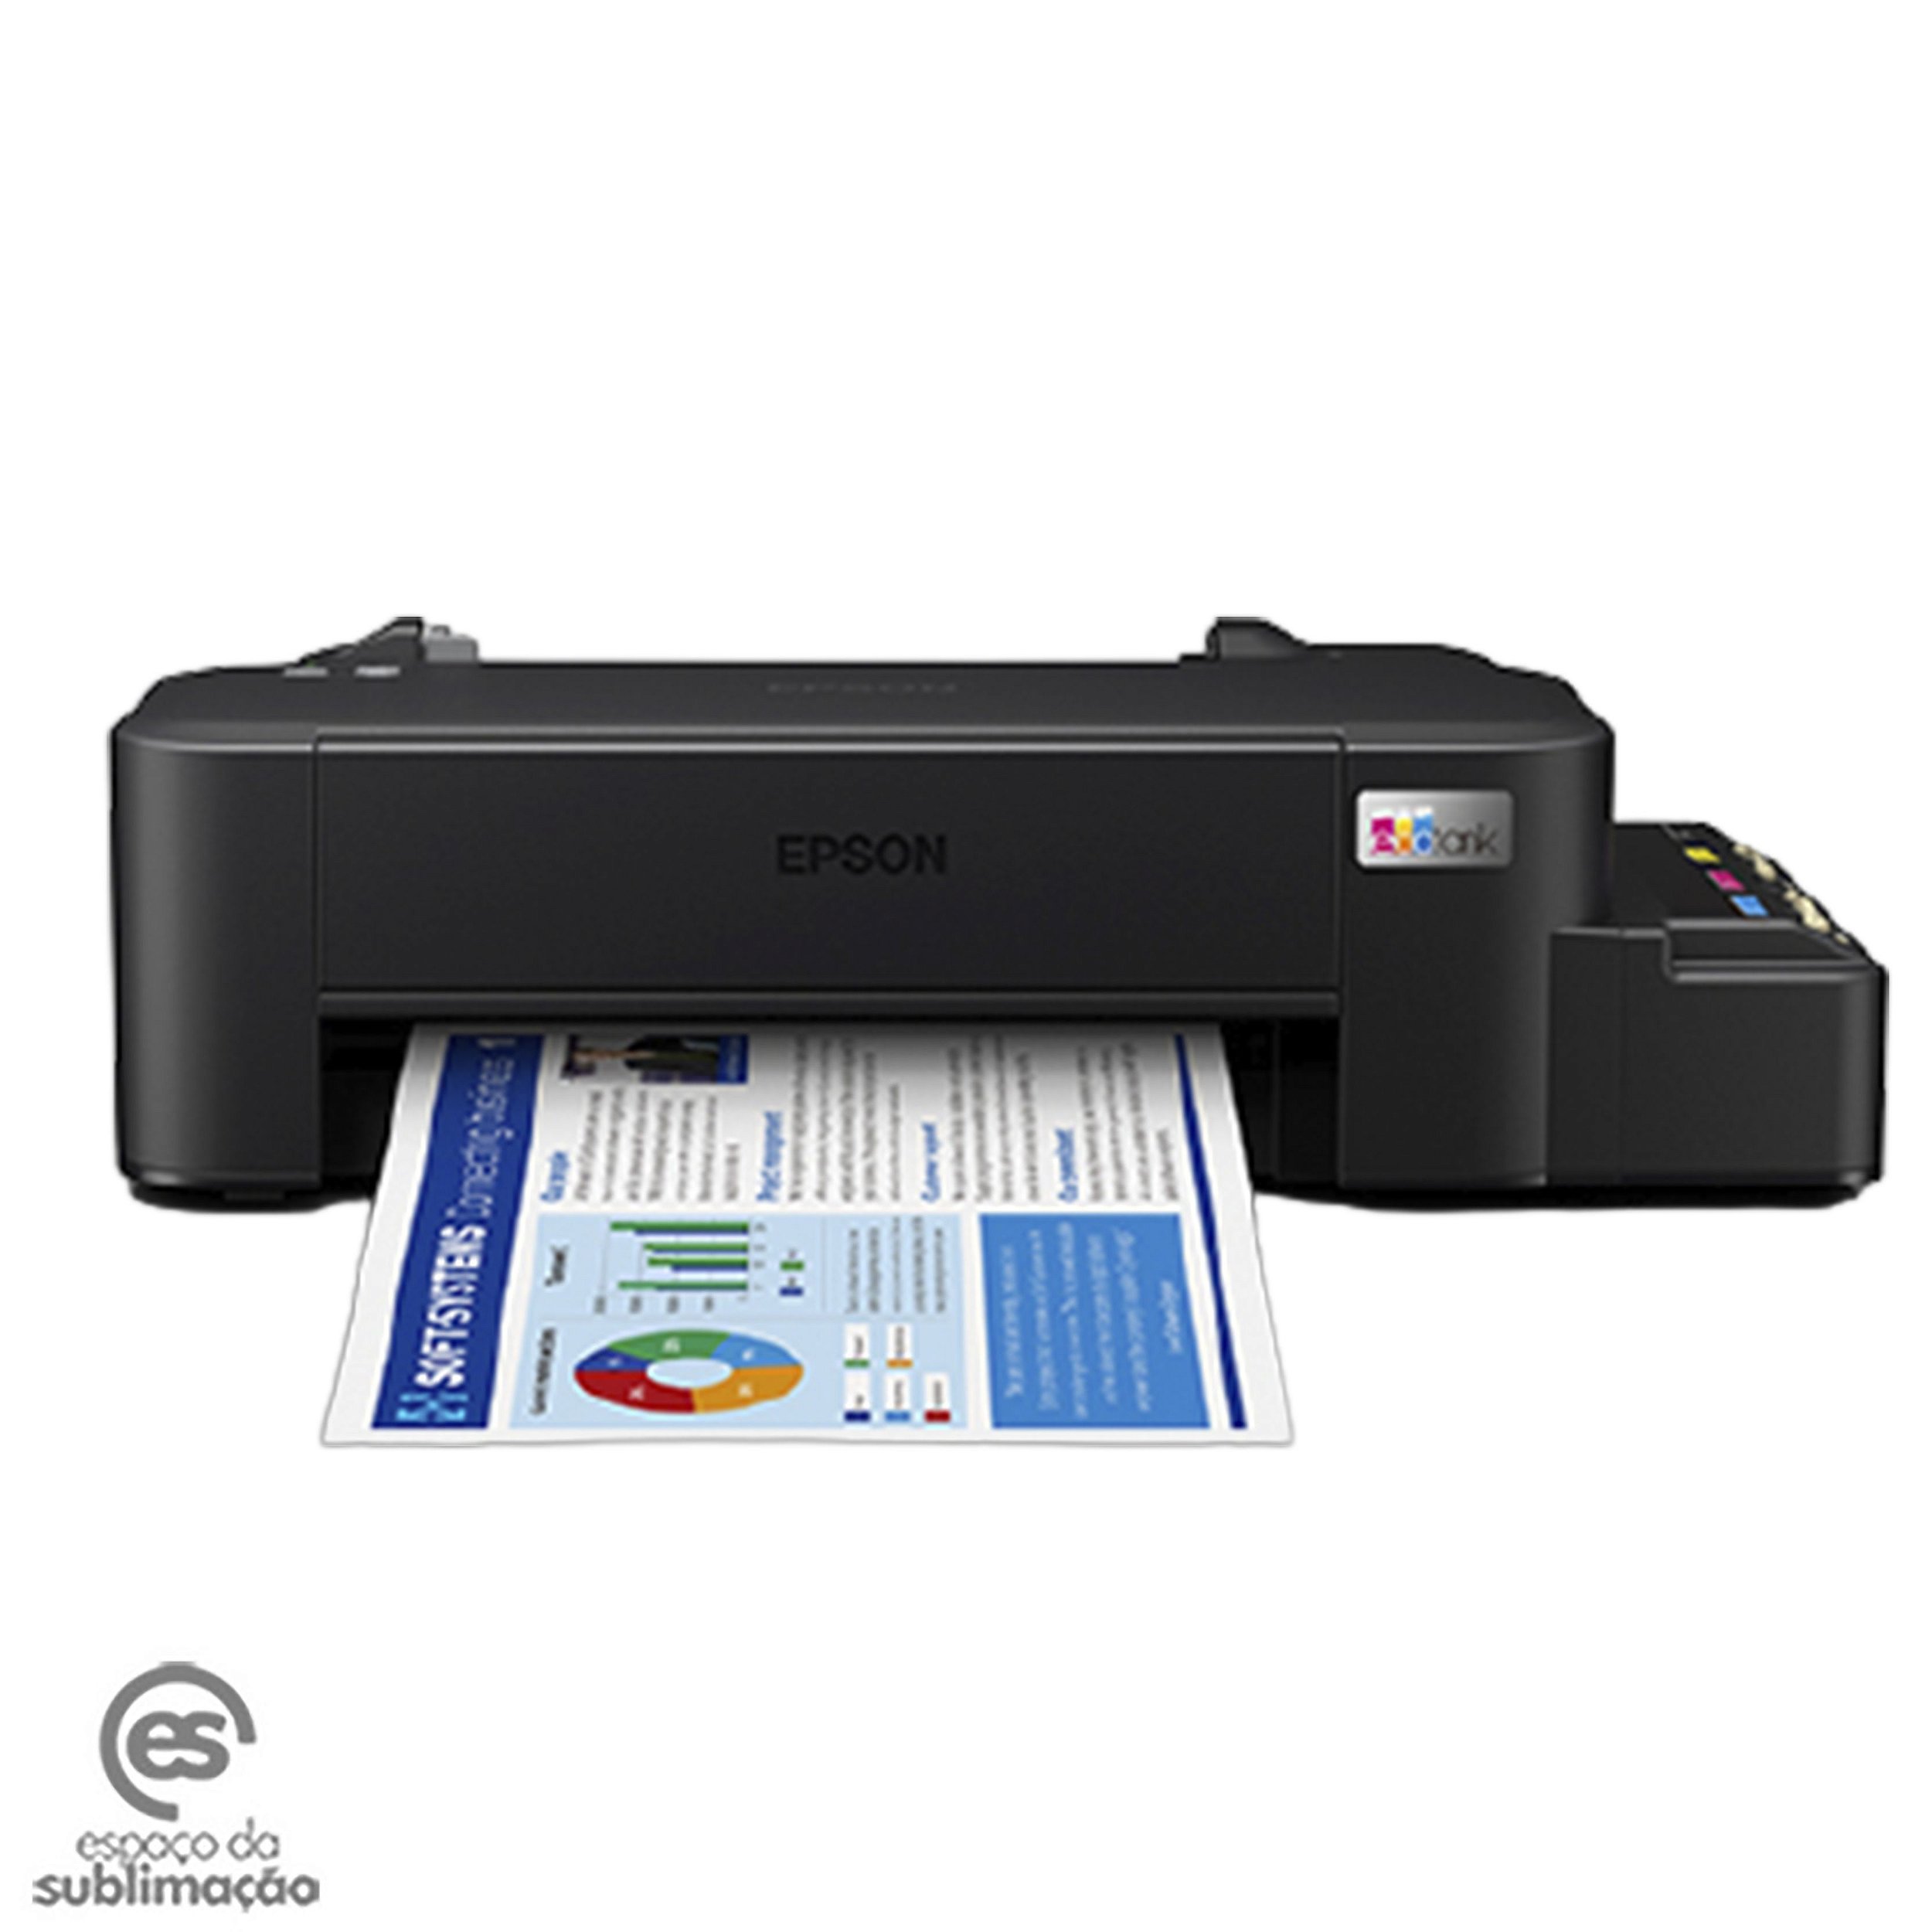 Impressora Epson L121 (Jato de Tinta Sublimática) - Espaço da Sublimação -  Tudo para sublimação e transfer